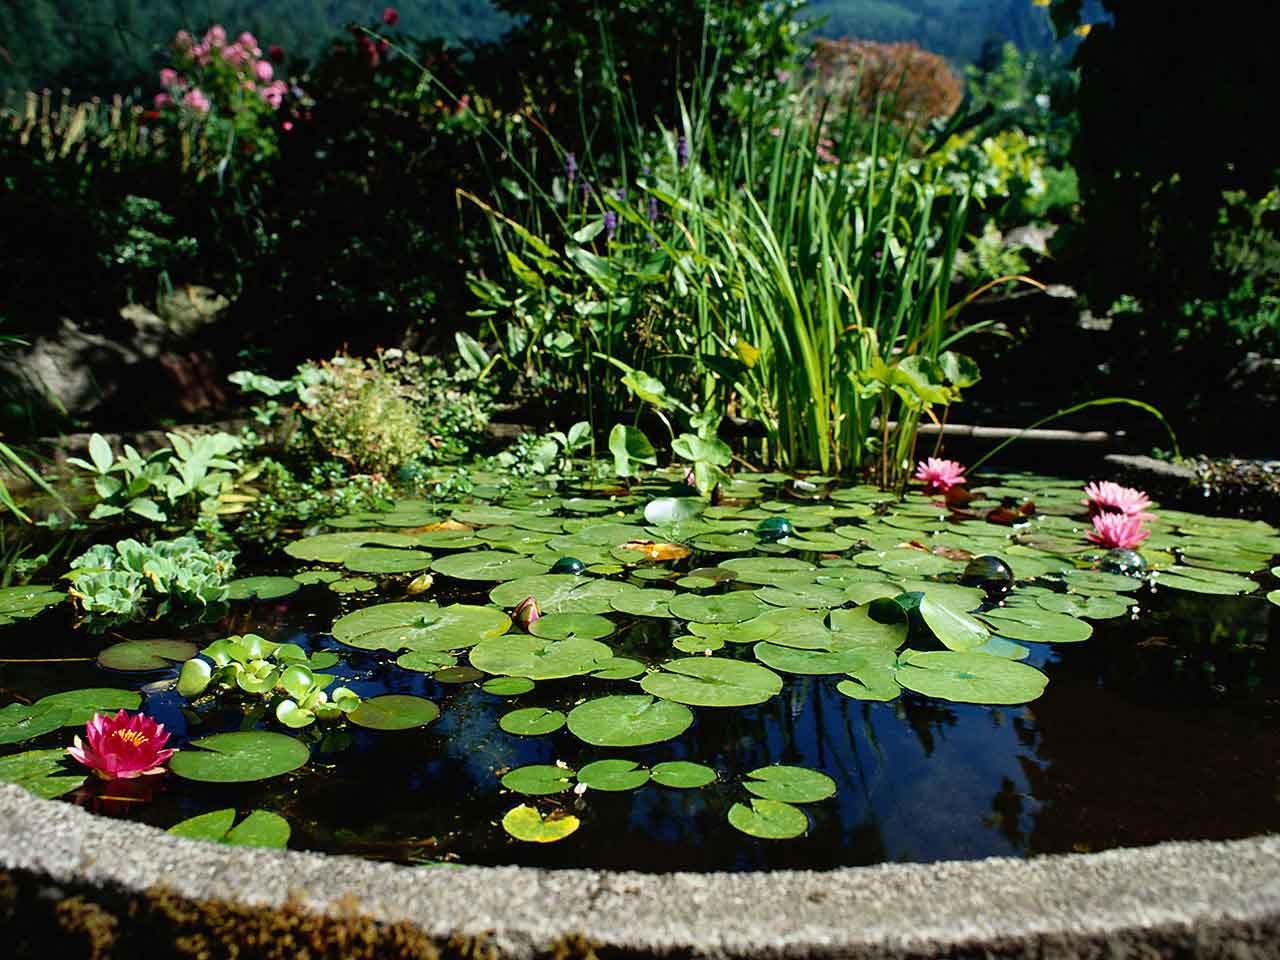 Garden pond in summer